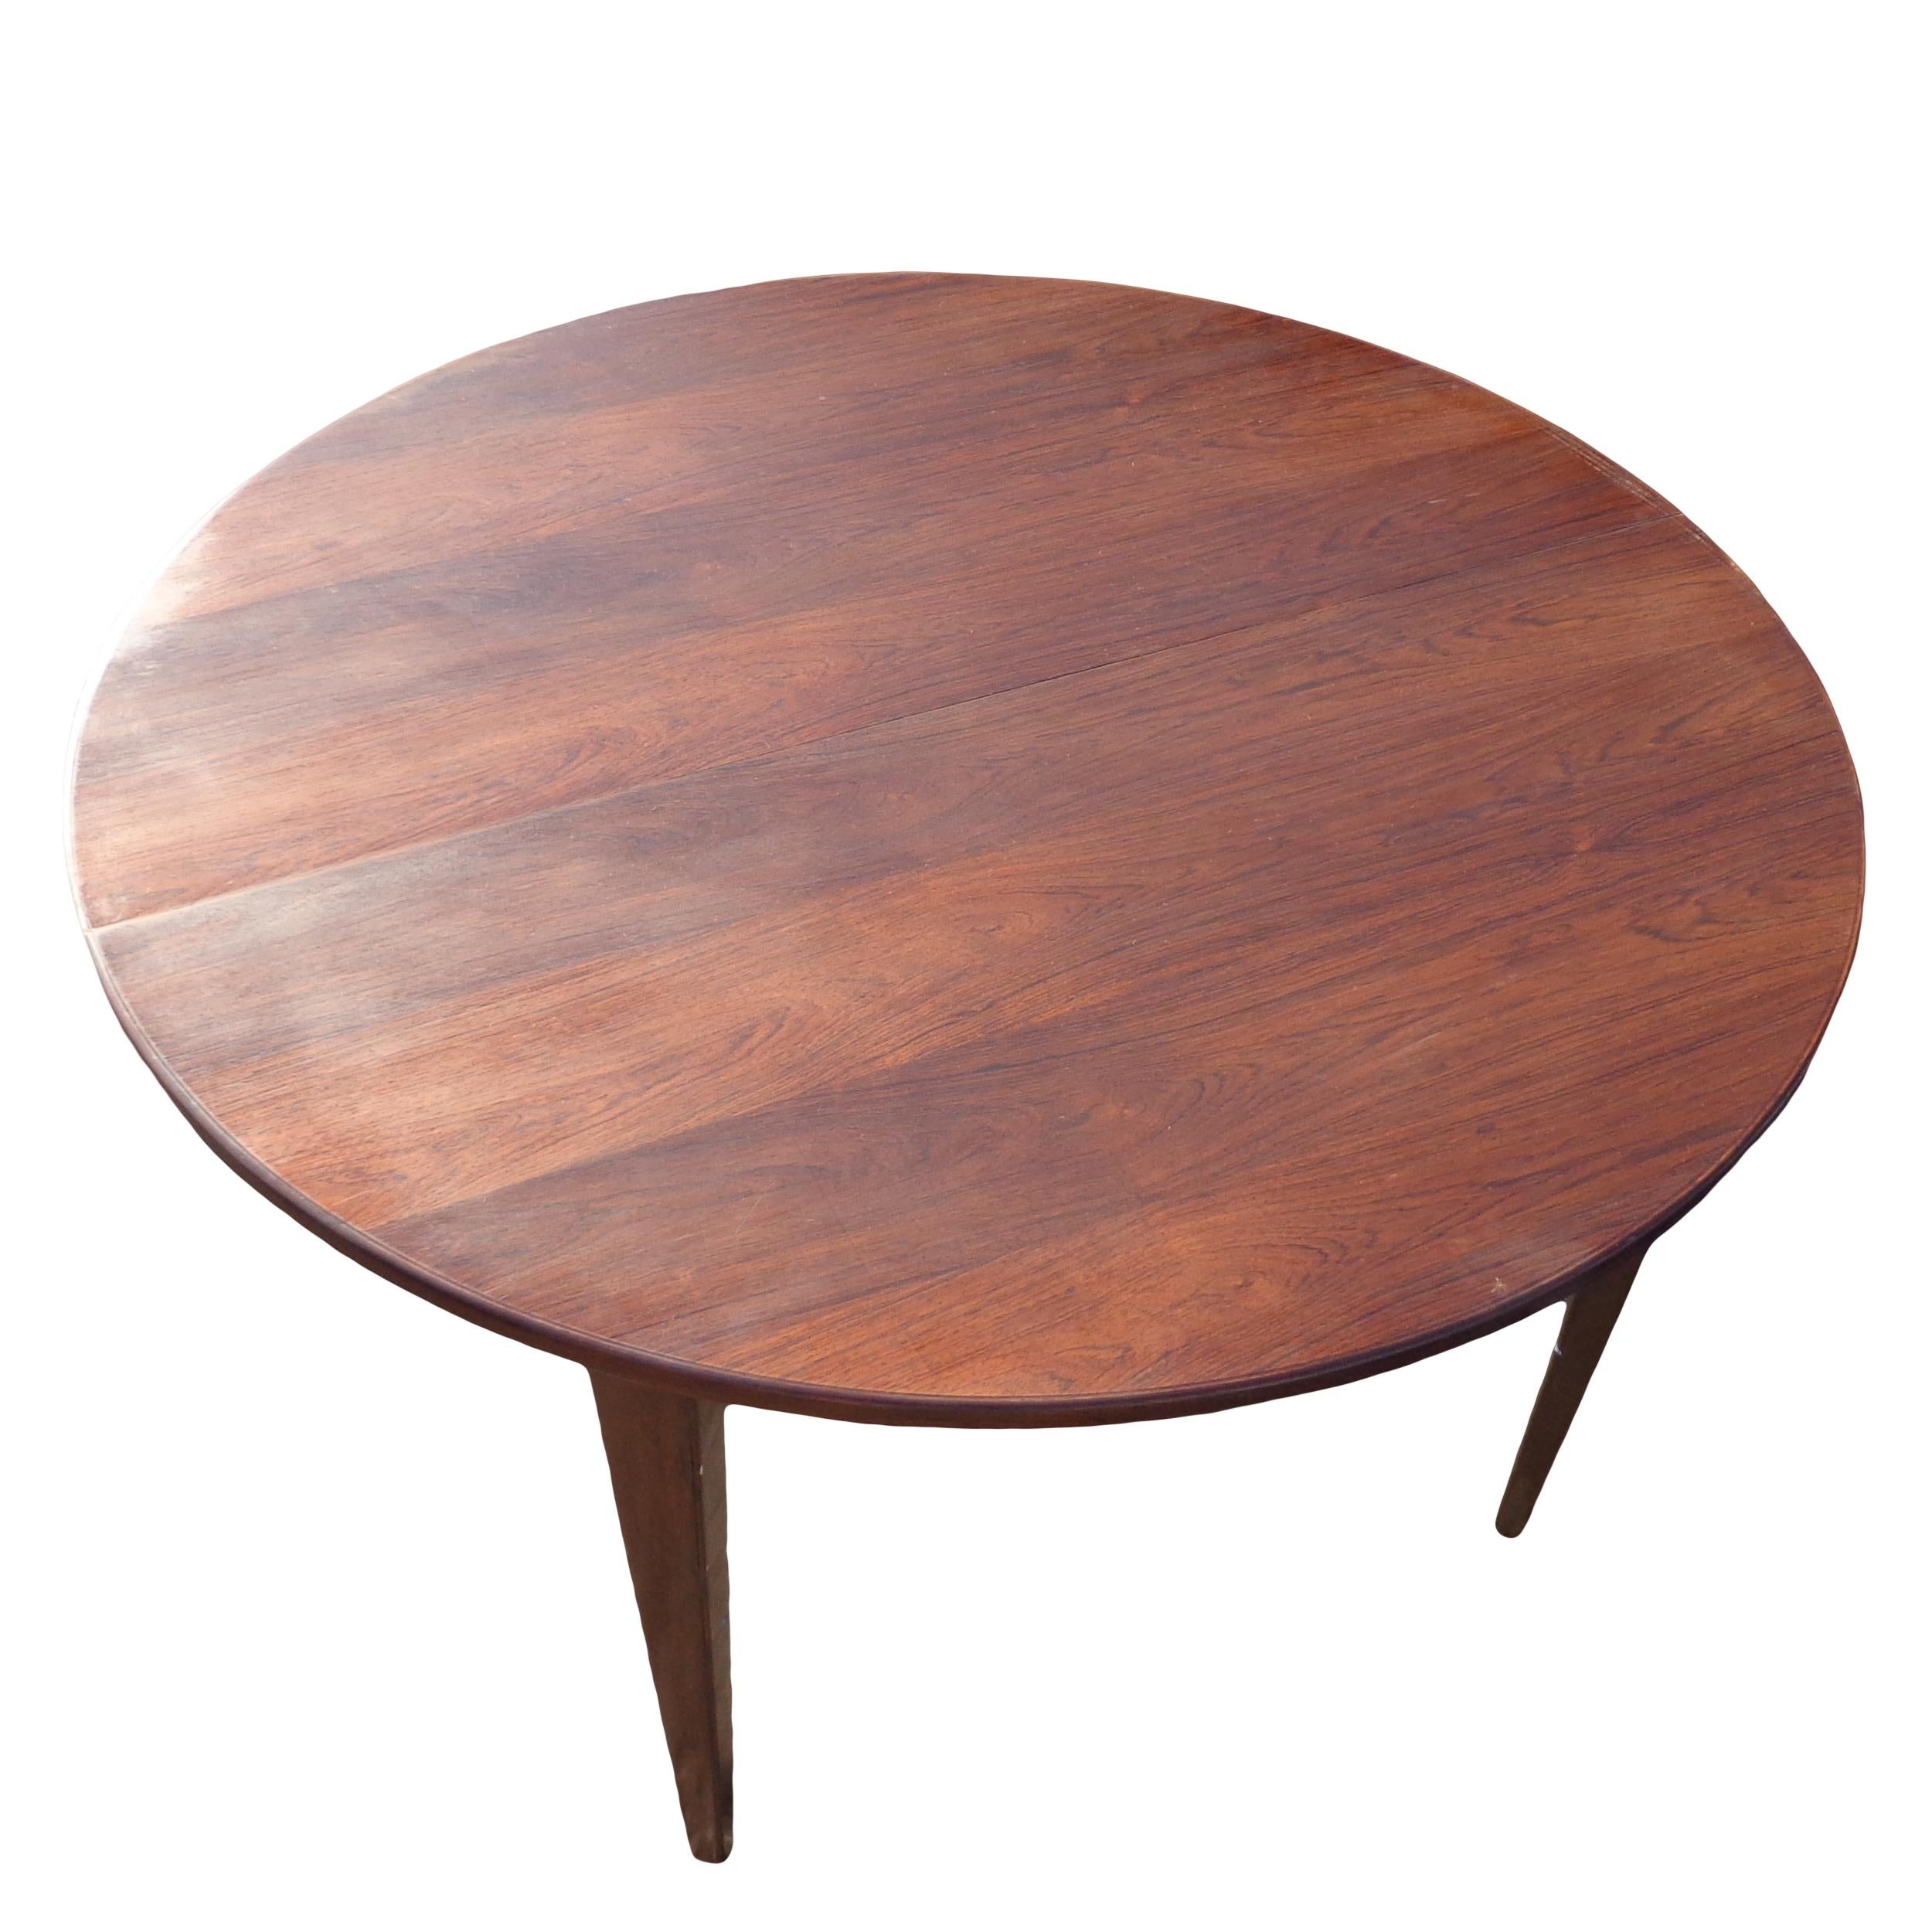 Runder Esstisch aus dänischem Palisanderholz

Dieser runde Tisch wird Hans Olsen zugeschrieben und misst 47,25? im Durchmesser und hat eine reiche Palisandermaserung.
 